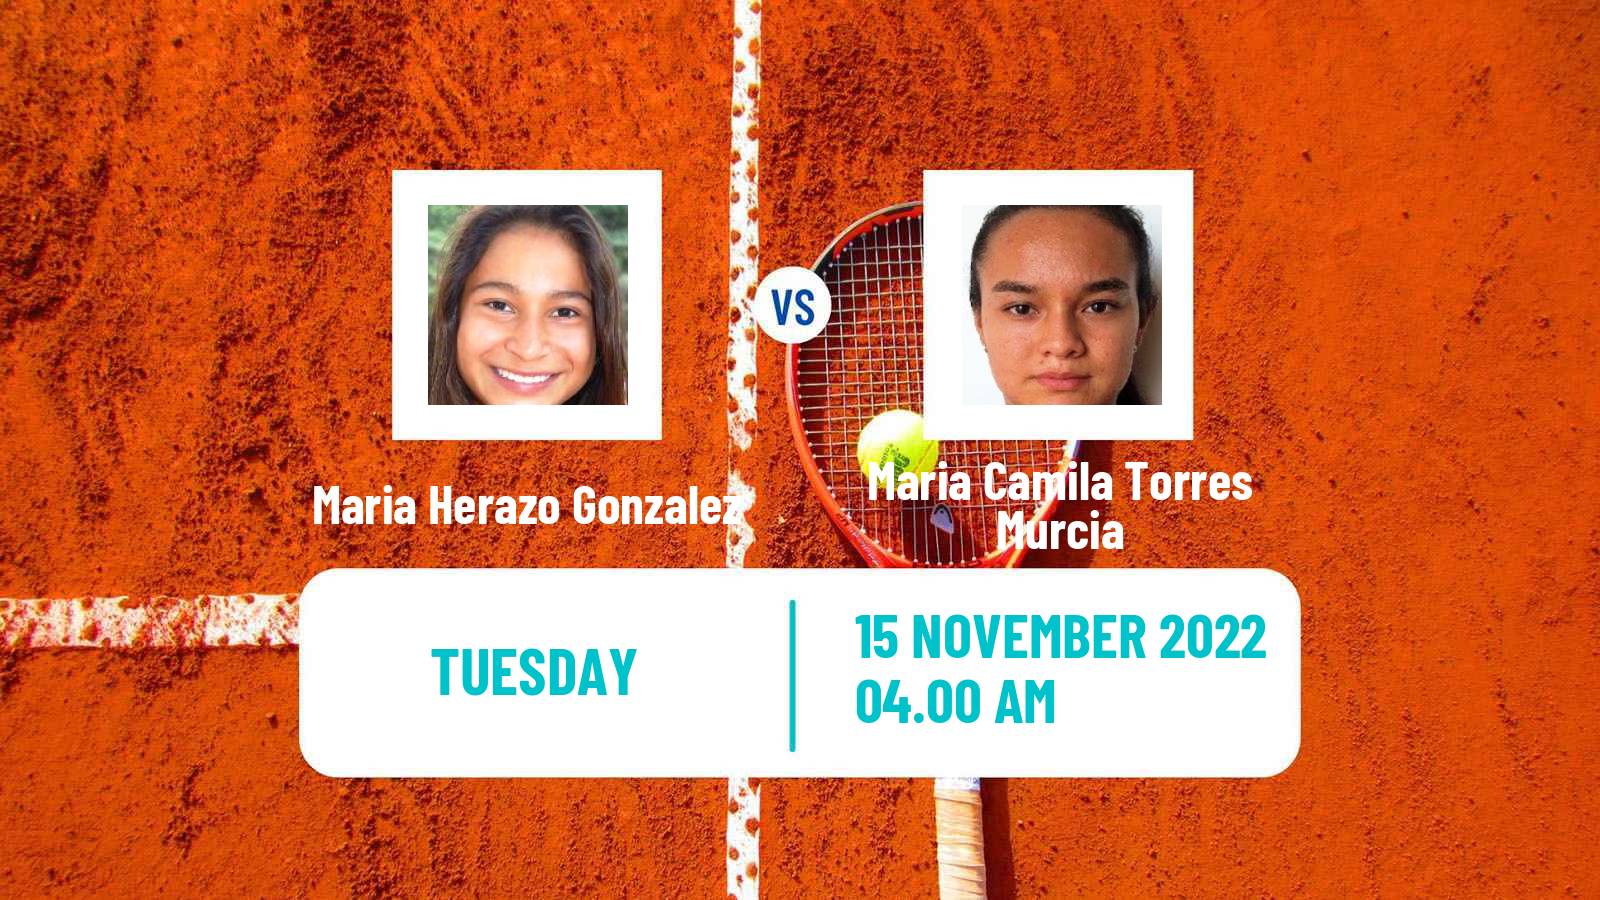 Tennis ITF Tournaments Maria Herazo Gonzalez - Maria Camila Torres Murcia